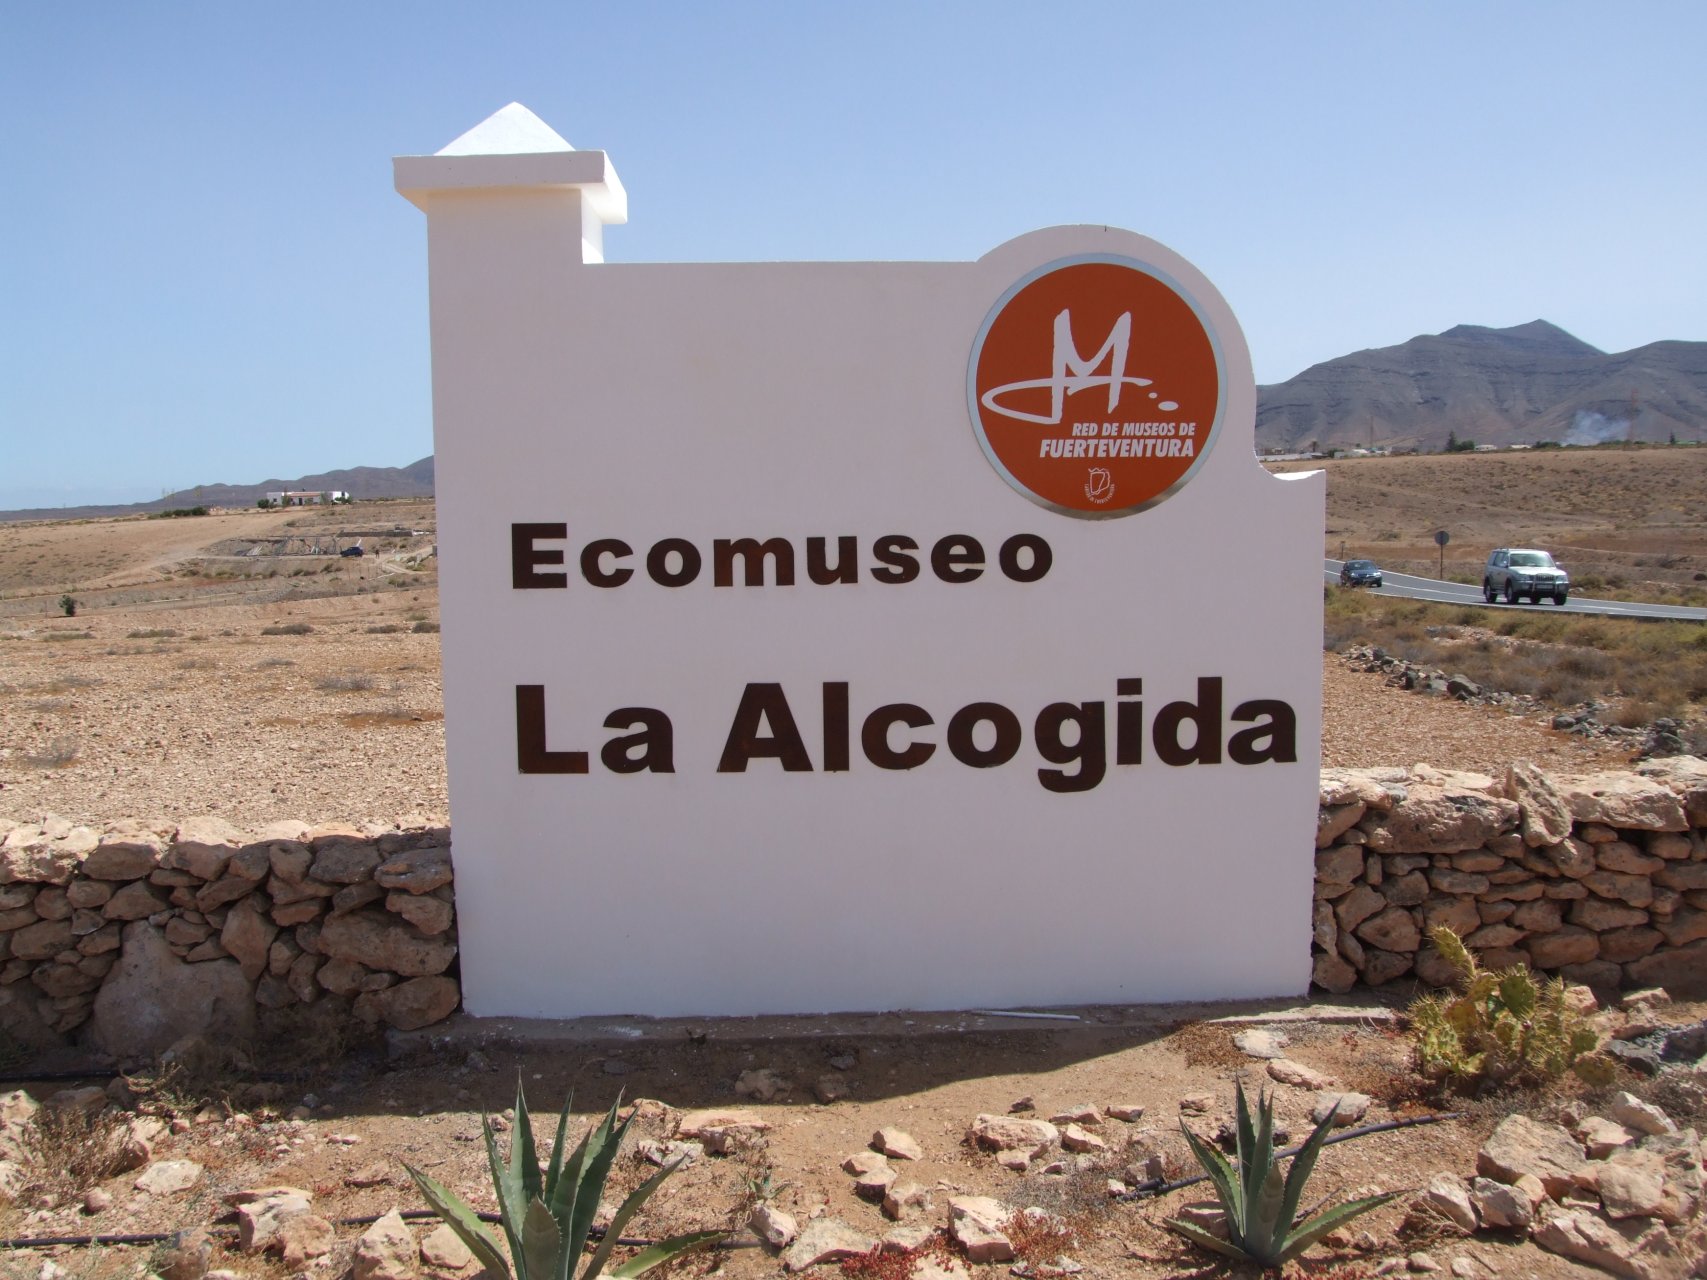 Kolejny przystanek na trasie zwiedzania wyspy: La Alcogida